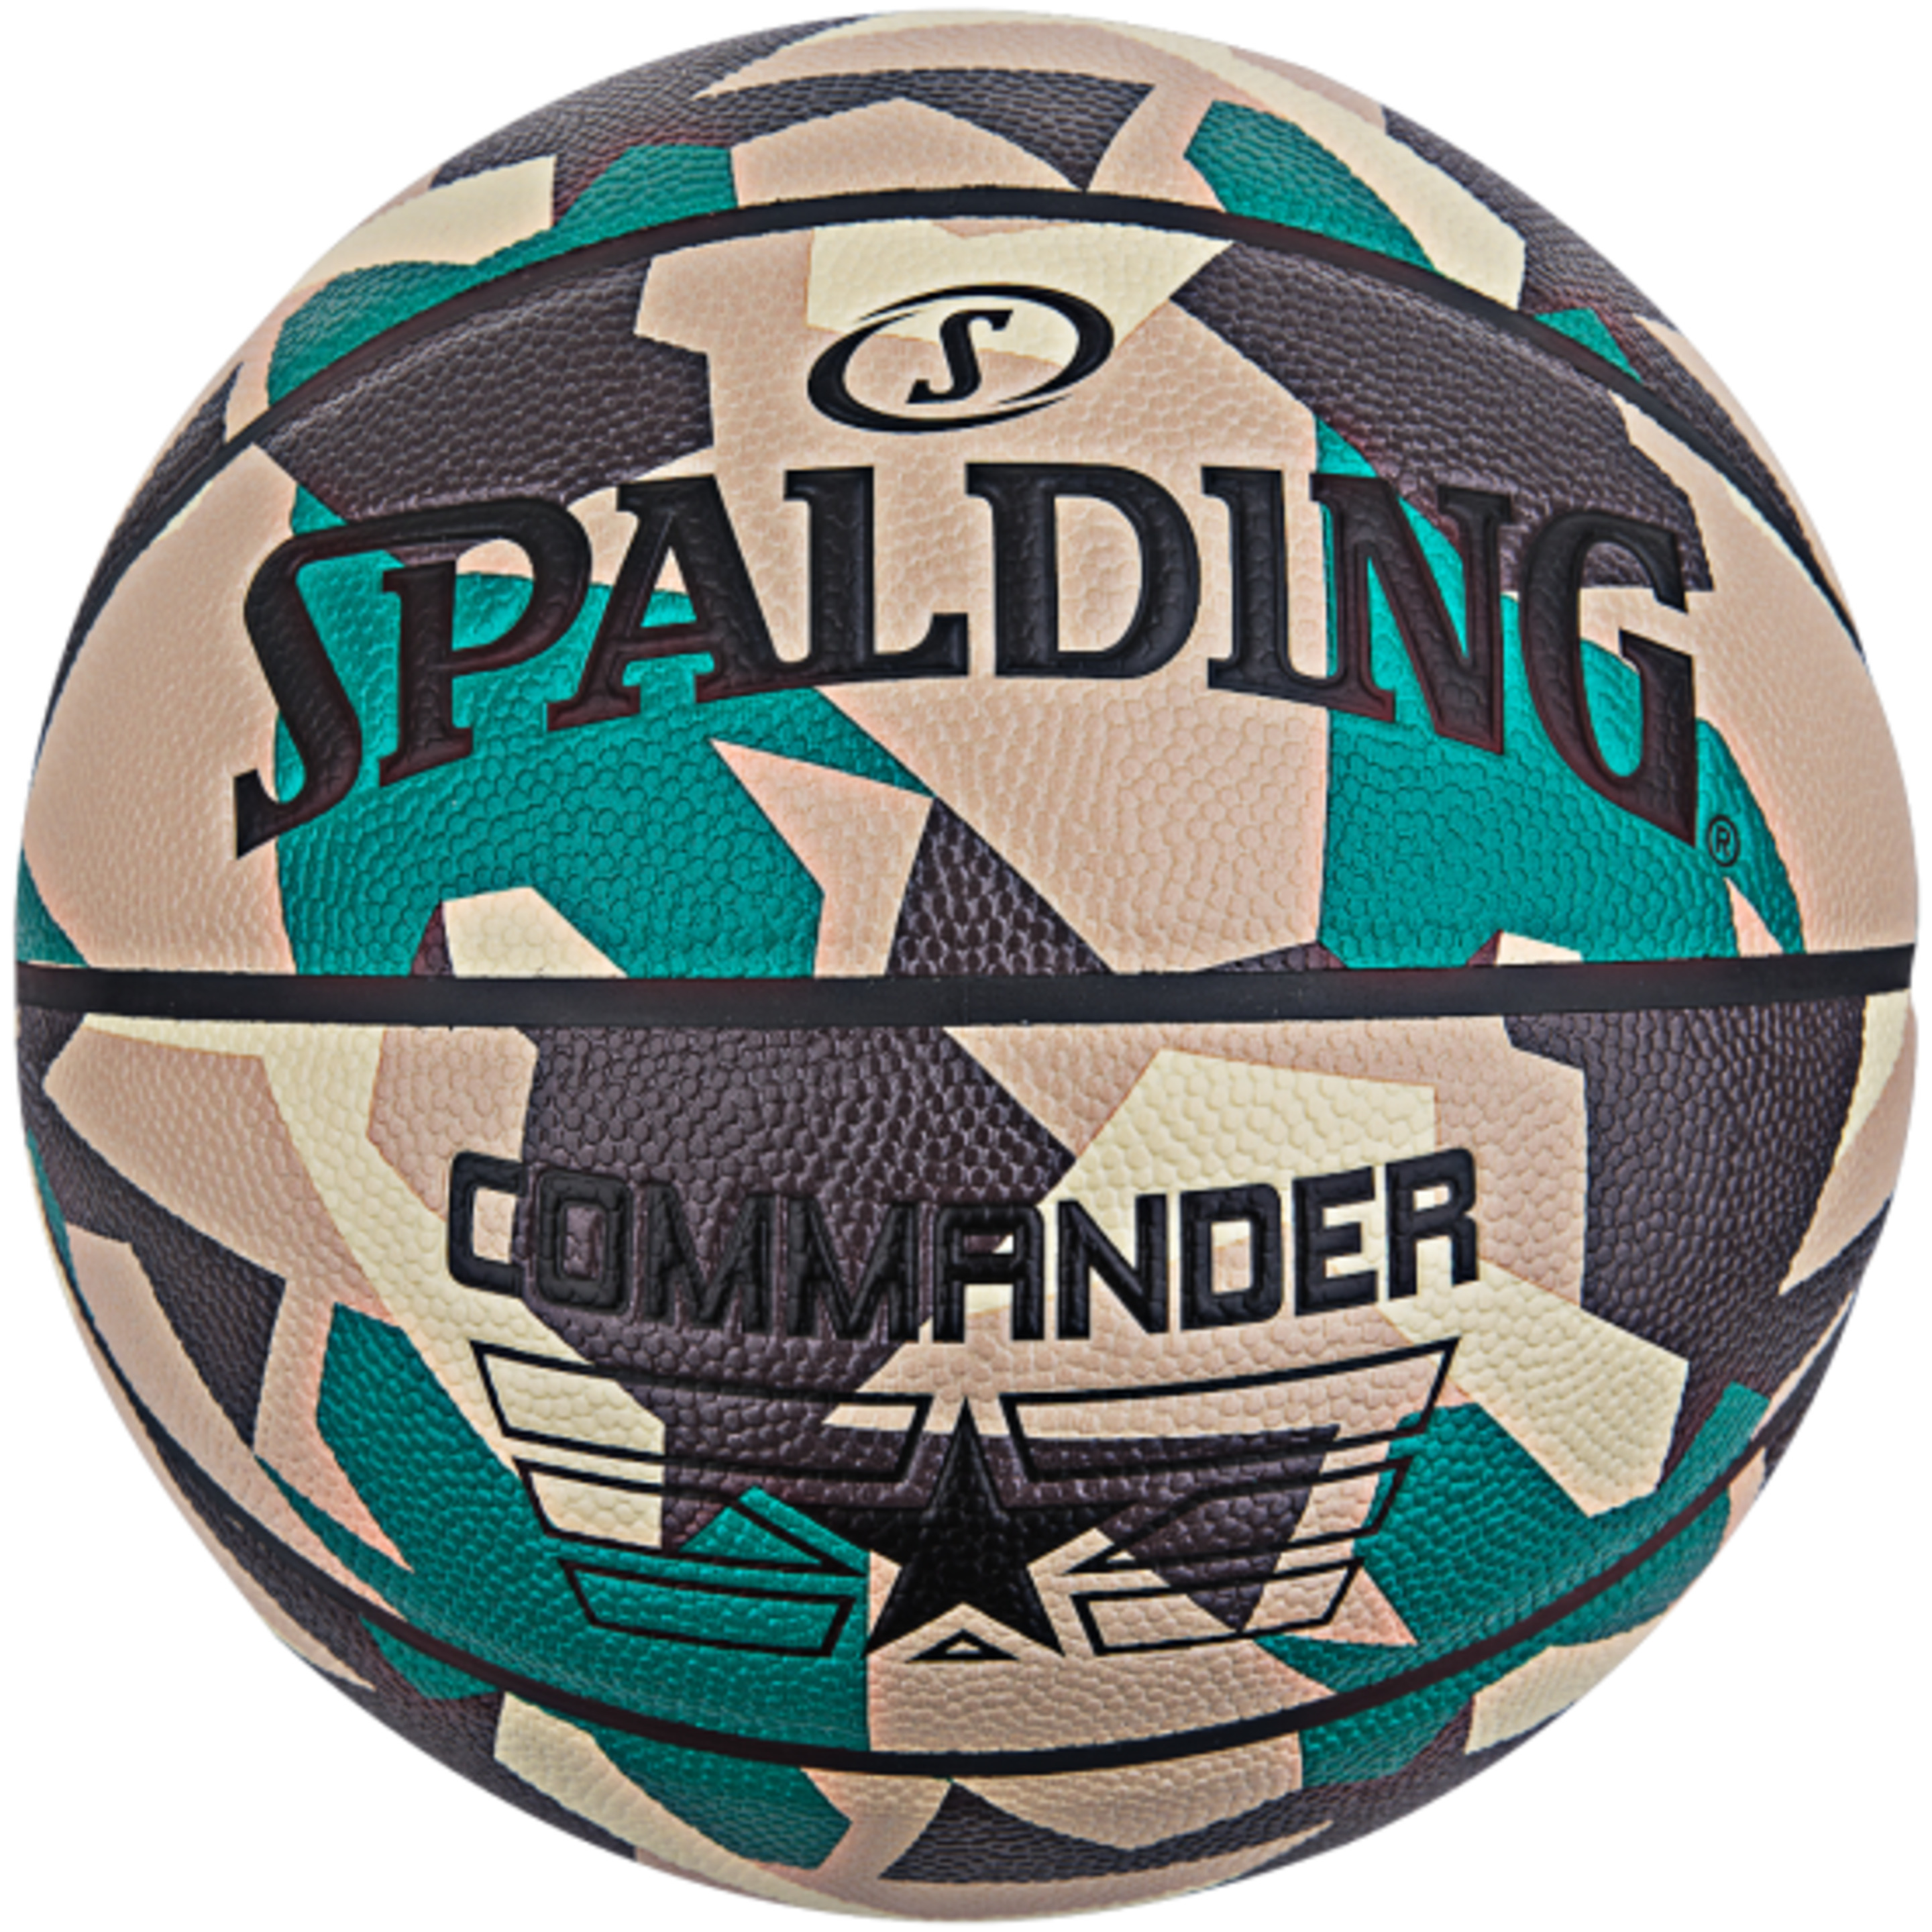 Spalding Commander Poly Sz7 Basquetebol - multicolor - 